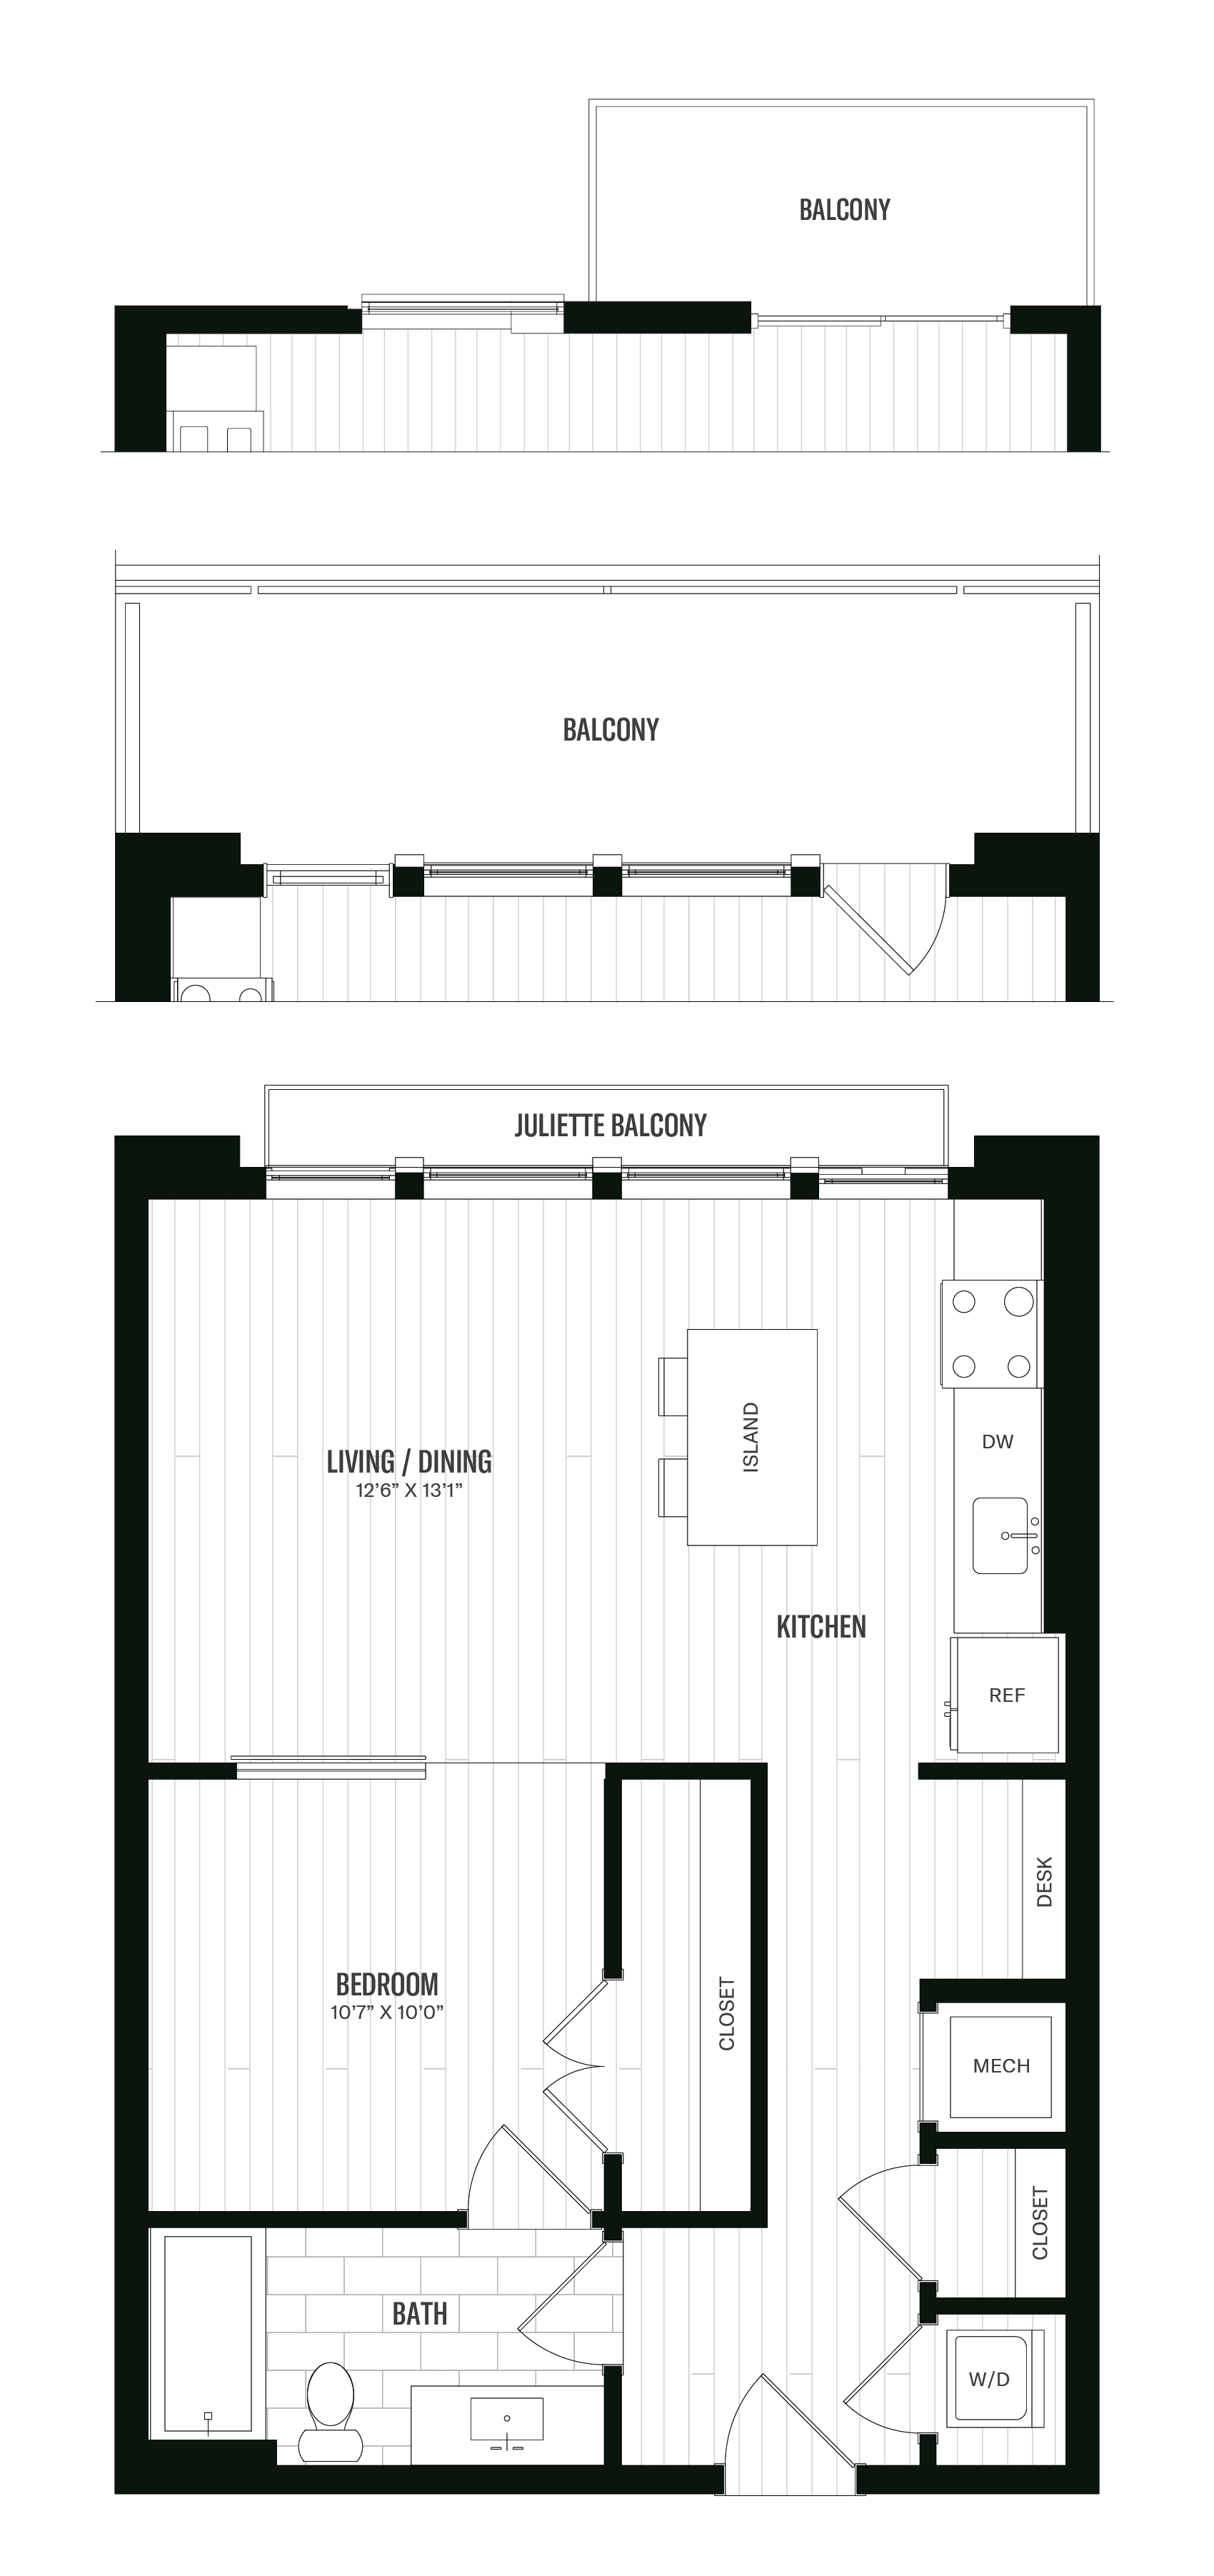 Floorplan image of unit 611